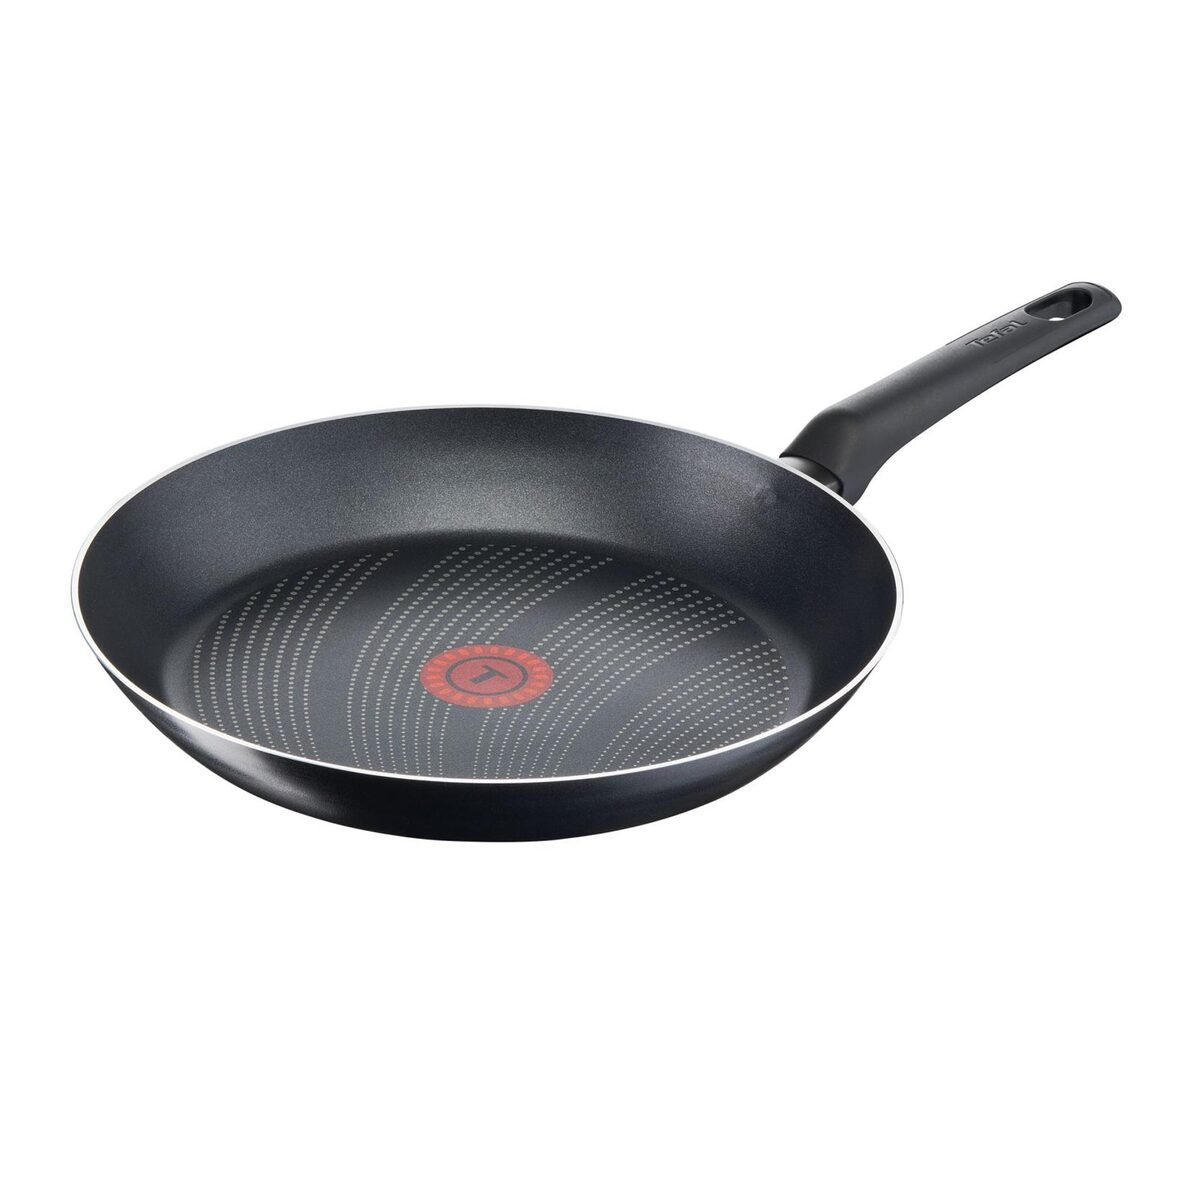 Tefal Cook'N'Clean Non-Stick Fry Pan, 28 cm, B2990652